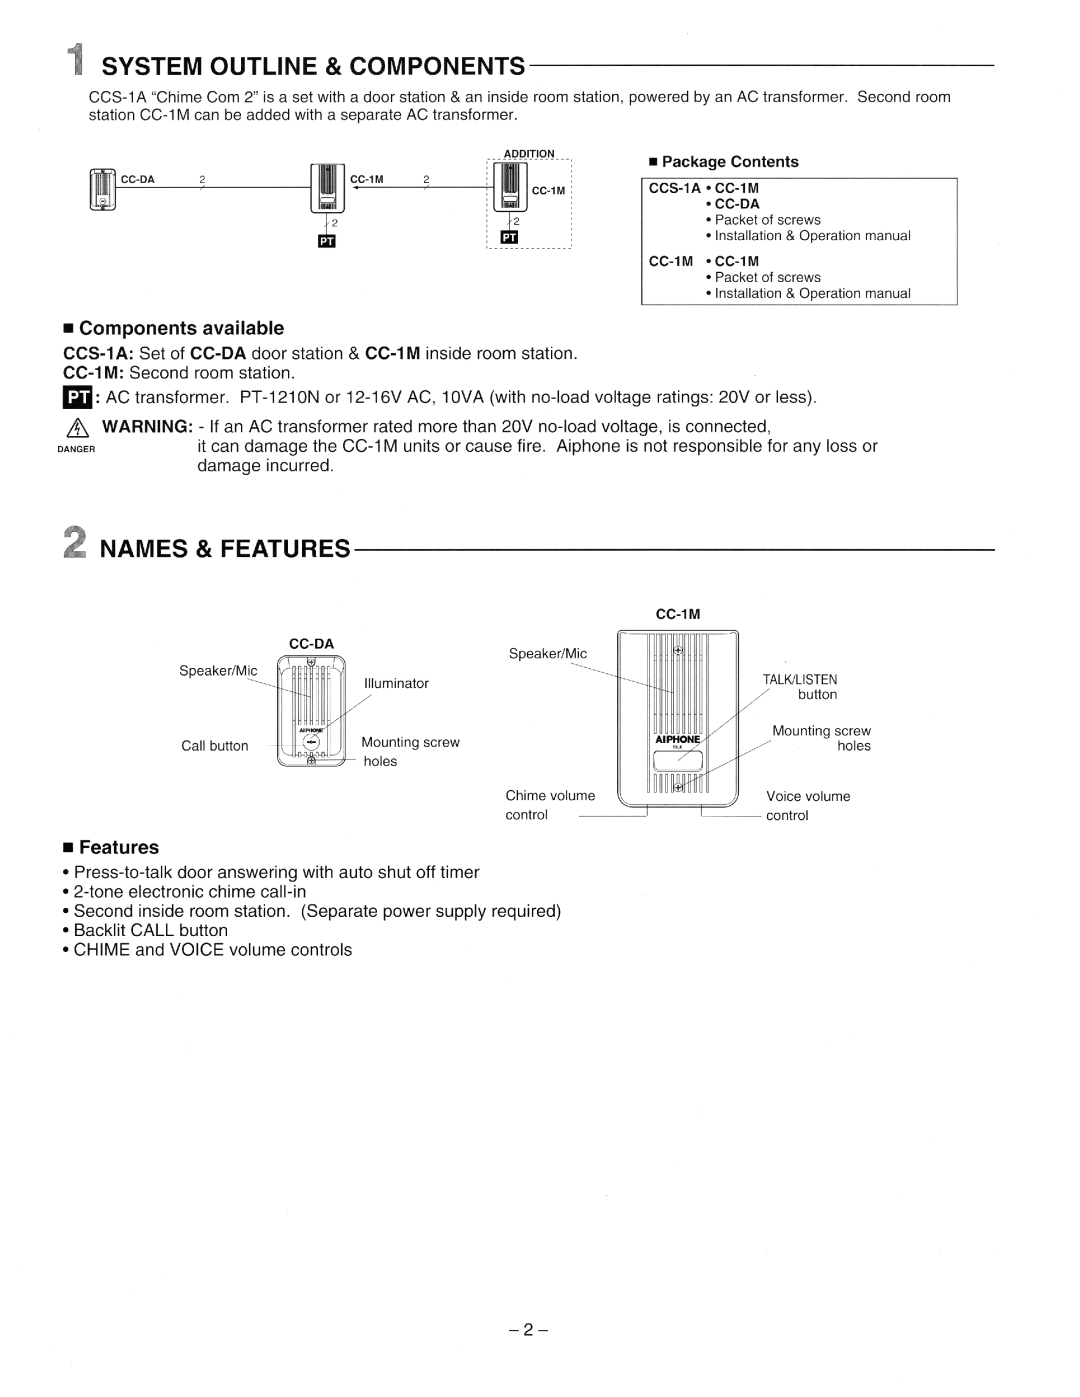 Aiphone Ccs 1a, CC-1M manual 